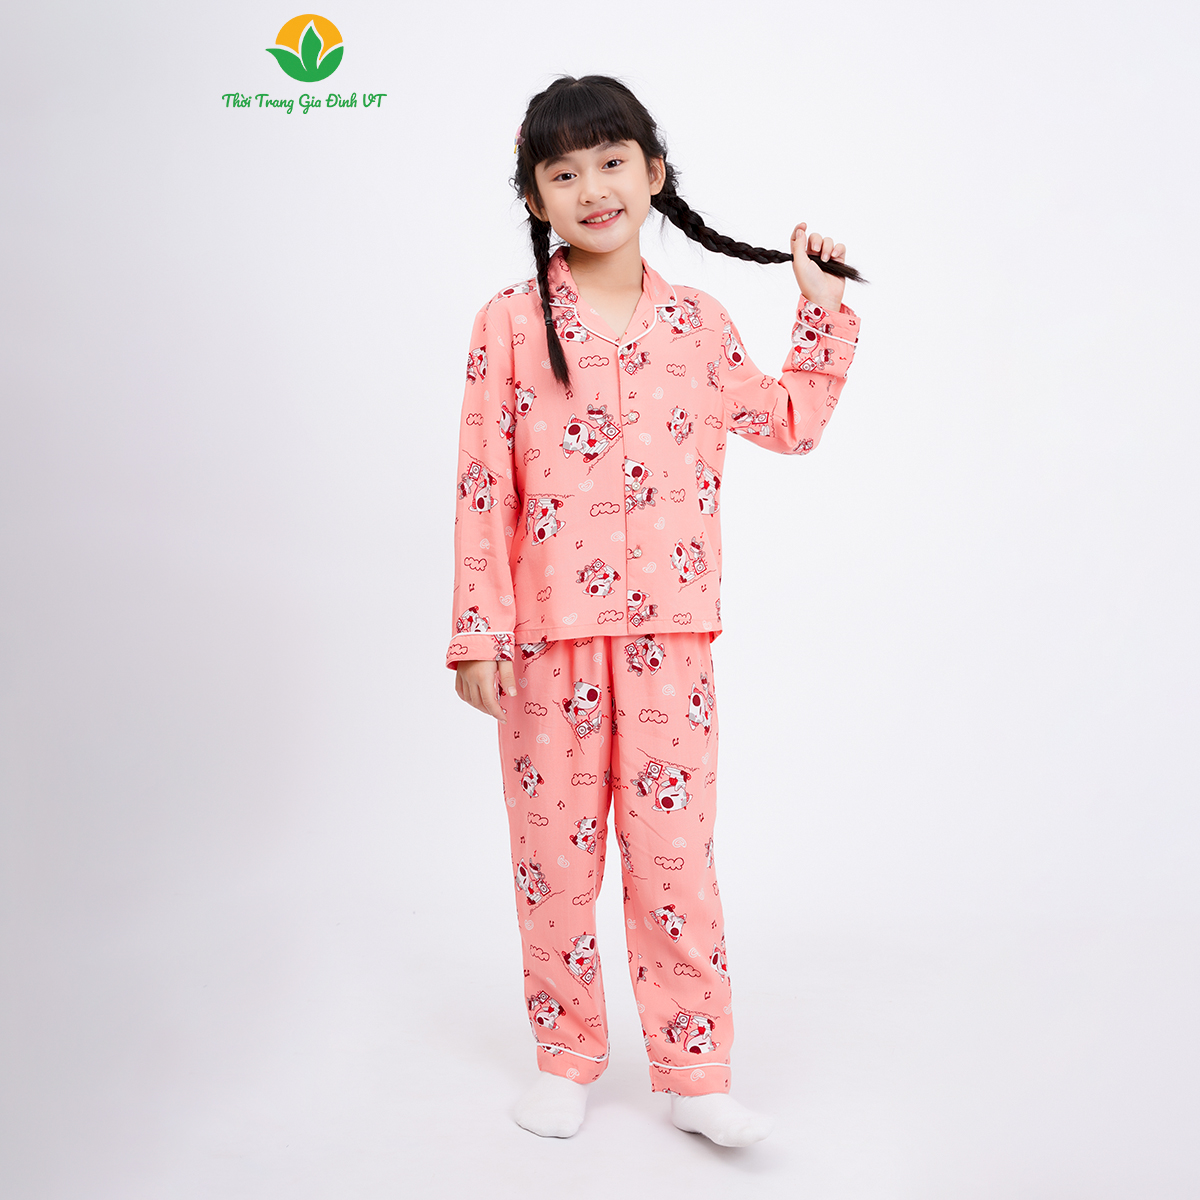 Bộ Pijama lanh mặc nhà bé gái thời trang Việt Thắng, quần dài, áo dài tay - B70.2301